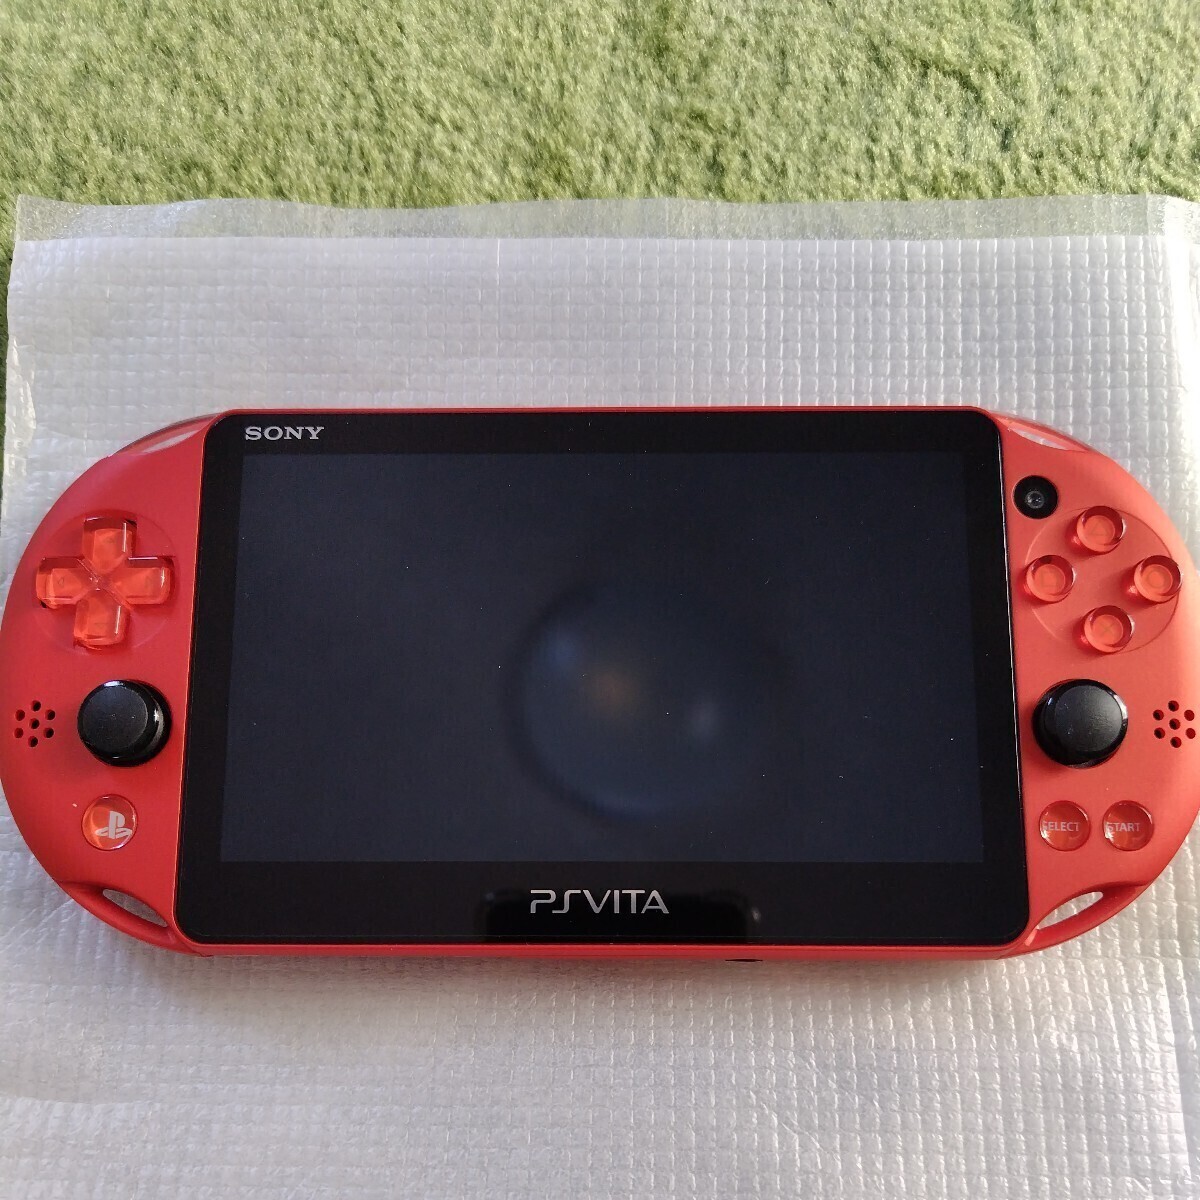 【美品】SONY PS Vita PCH-2000ZA26 Wi-Fiモデル 本体 メタリックレッド_画像2